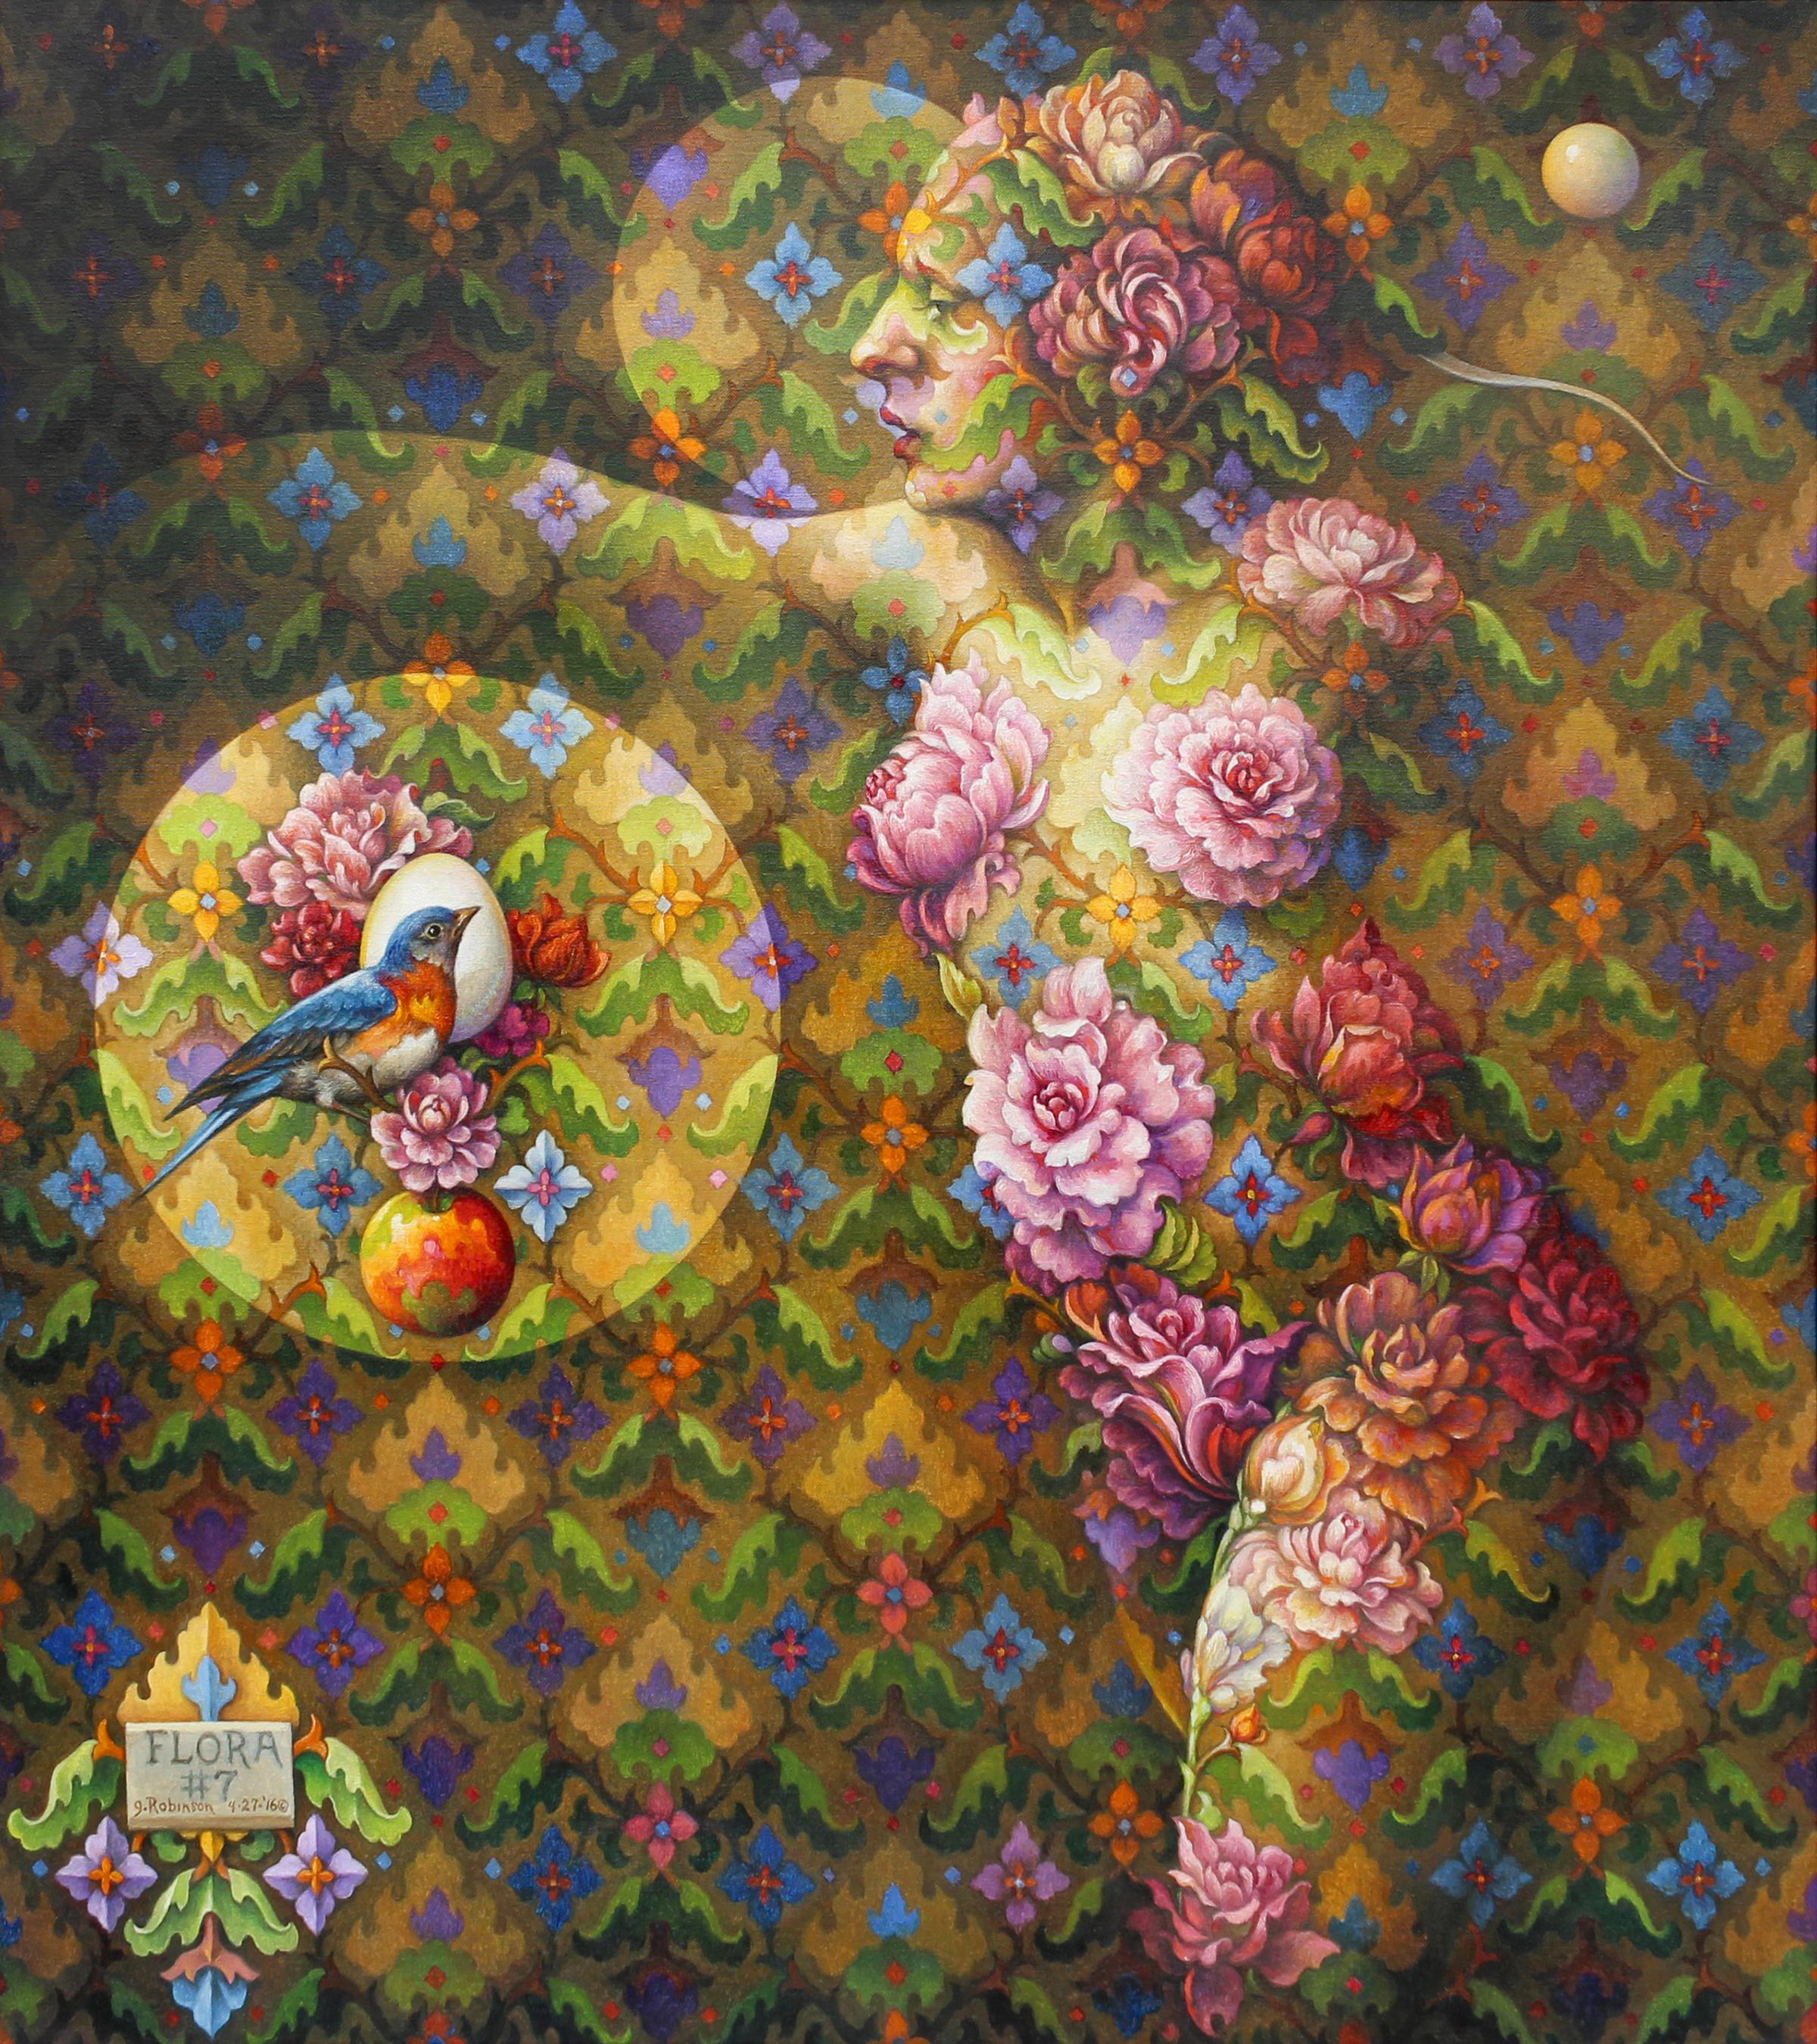 Guy Robinson Nude Painting - "Flora #7" - Geometric Surrealist Painting - Nude - Arcimboldo